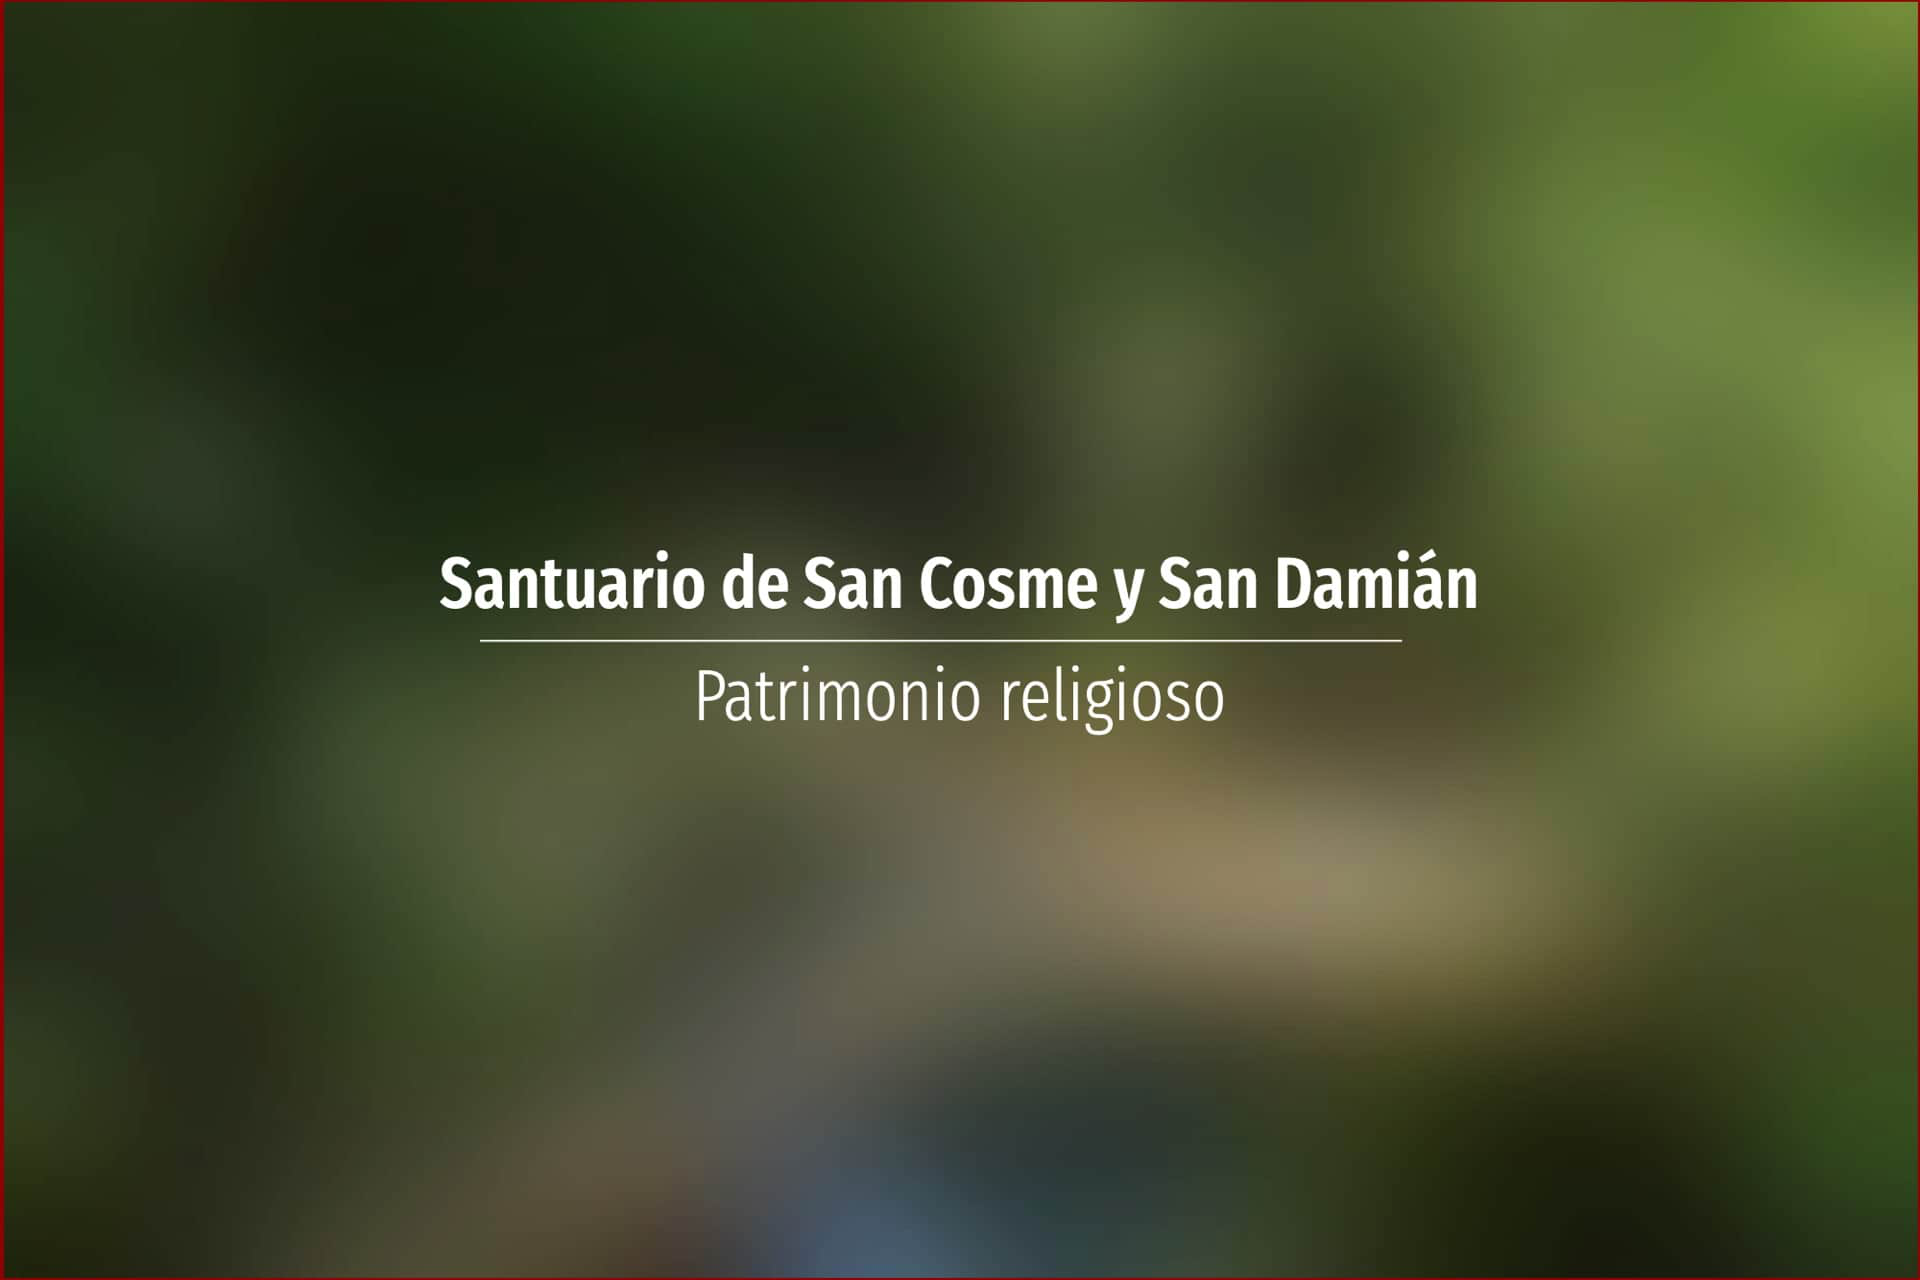 Santuario de San Cosme y San Damián